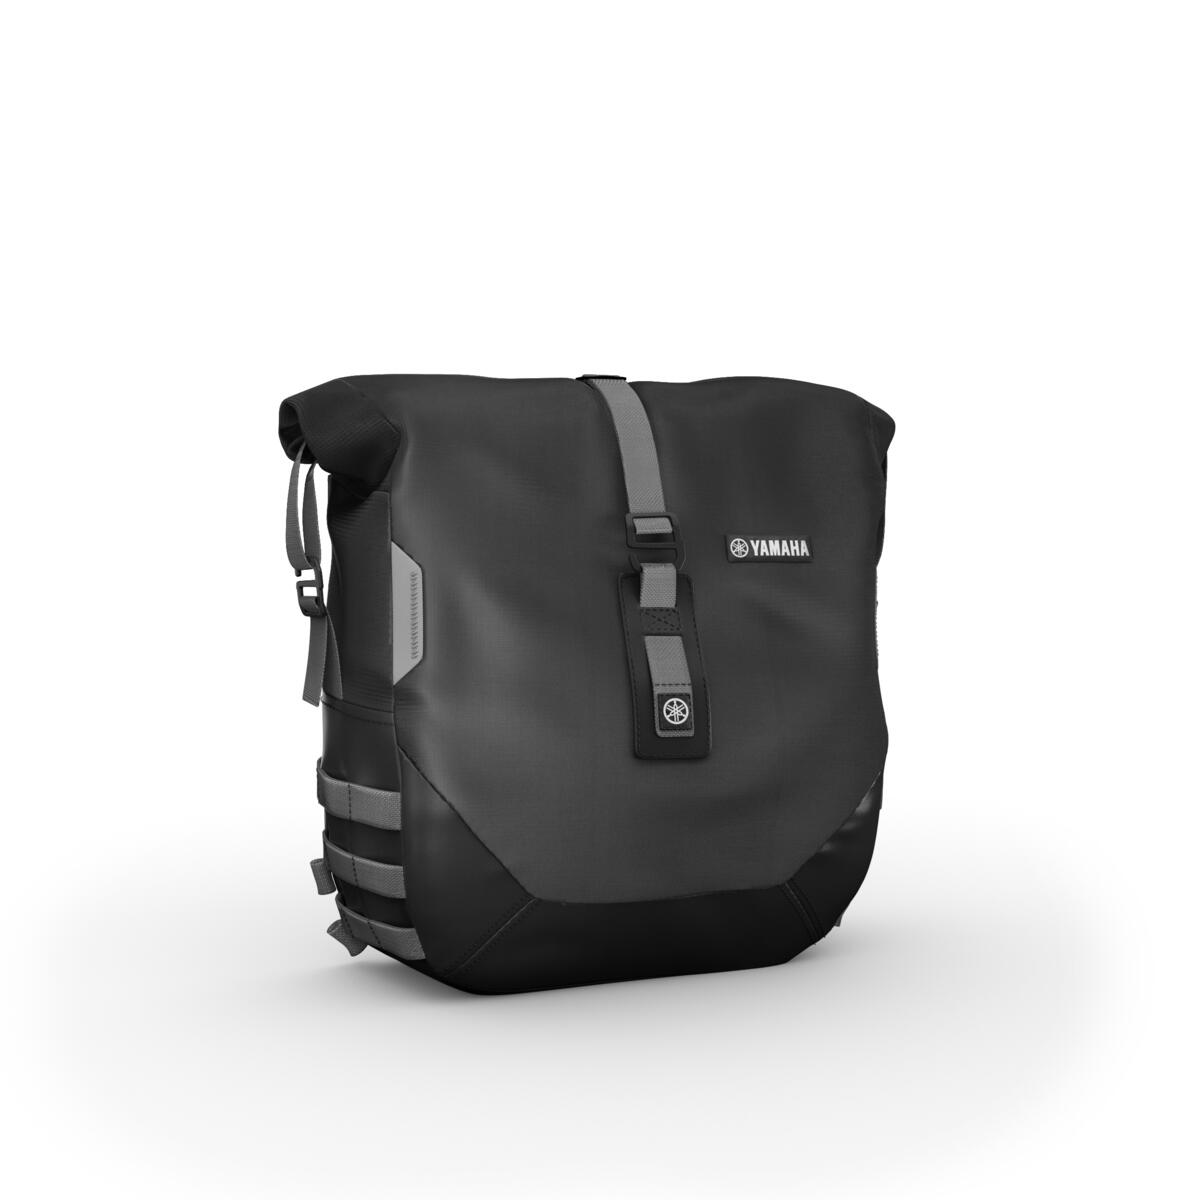 Verwandle deine XSR900 mit dem Wochenend-Paket in einen perfekten Langstrecken-Roadster. Durch die Ausstattung deines Bikes mit zwei Soft-Seitentaschen von je 13,5 l Volumen, die je 5 kg aufnehmen können, kannst du die wichtigsten Sachen für die extralange Reise einpacken. Mit den leicht anzubringenden Taschen mit wasserdichten Lagen wird dein Gepäck vor ungünstigen Wetterbedingungen geschützt. Das Paket enthält ein USB-Ladegerät zum Aufladen des Navigationsgeräts oder Handys während der Fahrt.